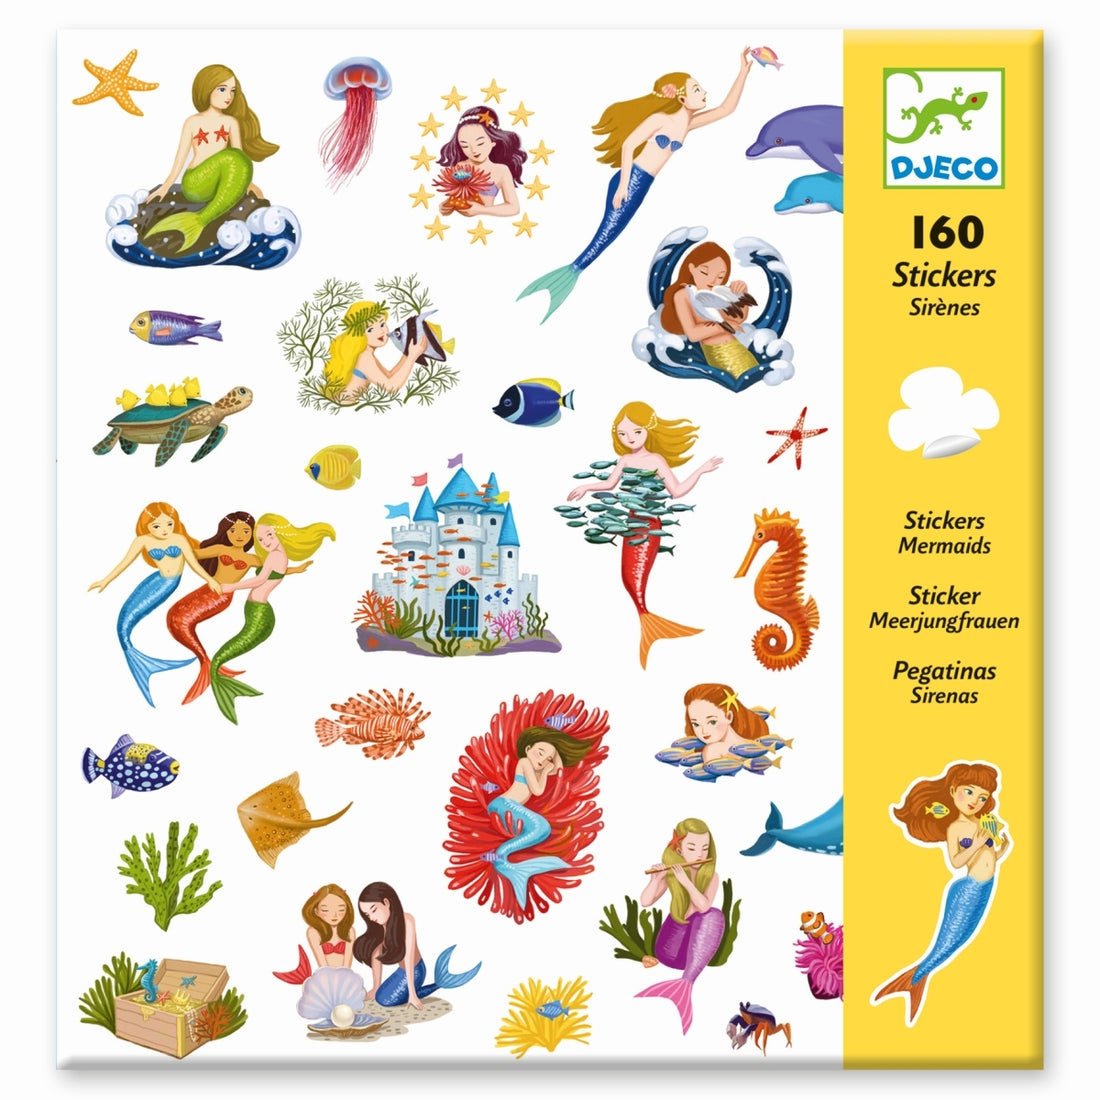 Ein Set mit 160 Stickern, um in das faszinierenden Universum der Meerjungfrauen einzutauchen. Meerestiere, schöne Meerjungfrauen, andere Deko uvm. Alle sind mit dabei! Das Kind klebt die zahlreichen Sticker nach Wunsch auf und erschafft schöne Unterwasserszenen oder nutzt sie als Dekoration für andere Objekte.